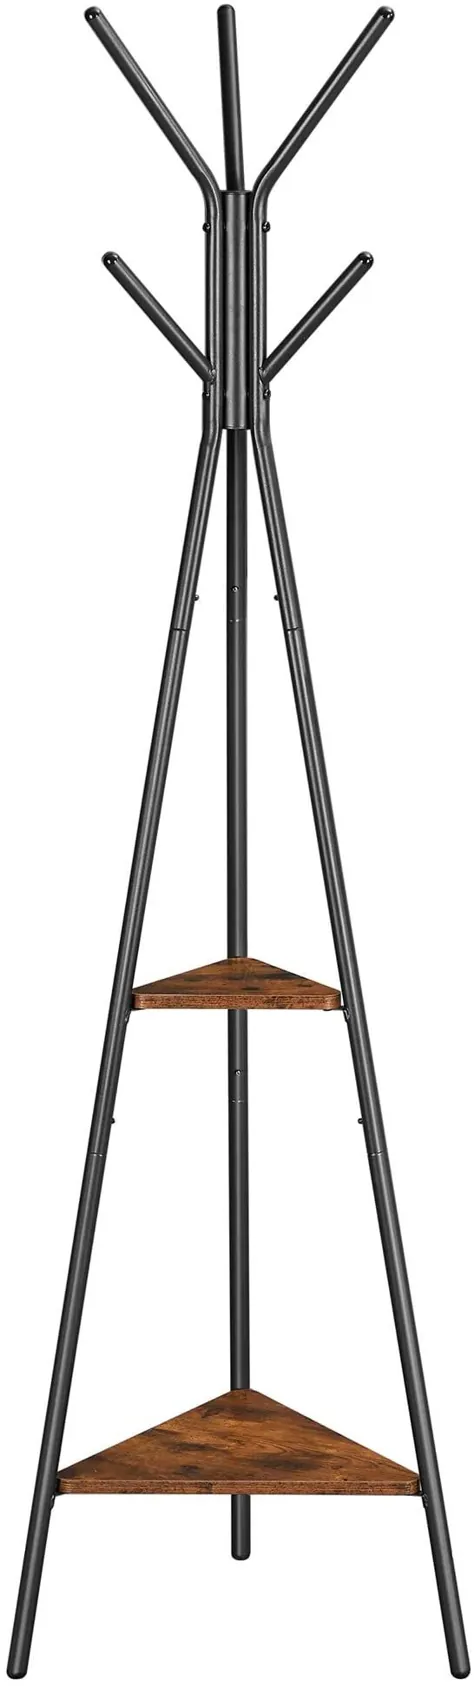 پایه قفسه کت VASAGLE ، درخت کت ، ایستاده بدون درخت هال ، سبک صنعتی ، با 2 قفسه ، برای لباس ، کلاه ، کیف ، قهوه ای روستایی و سیاه URCR16BX